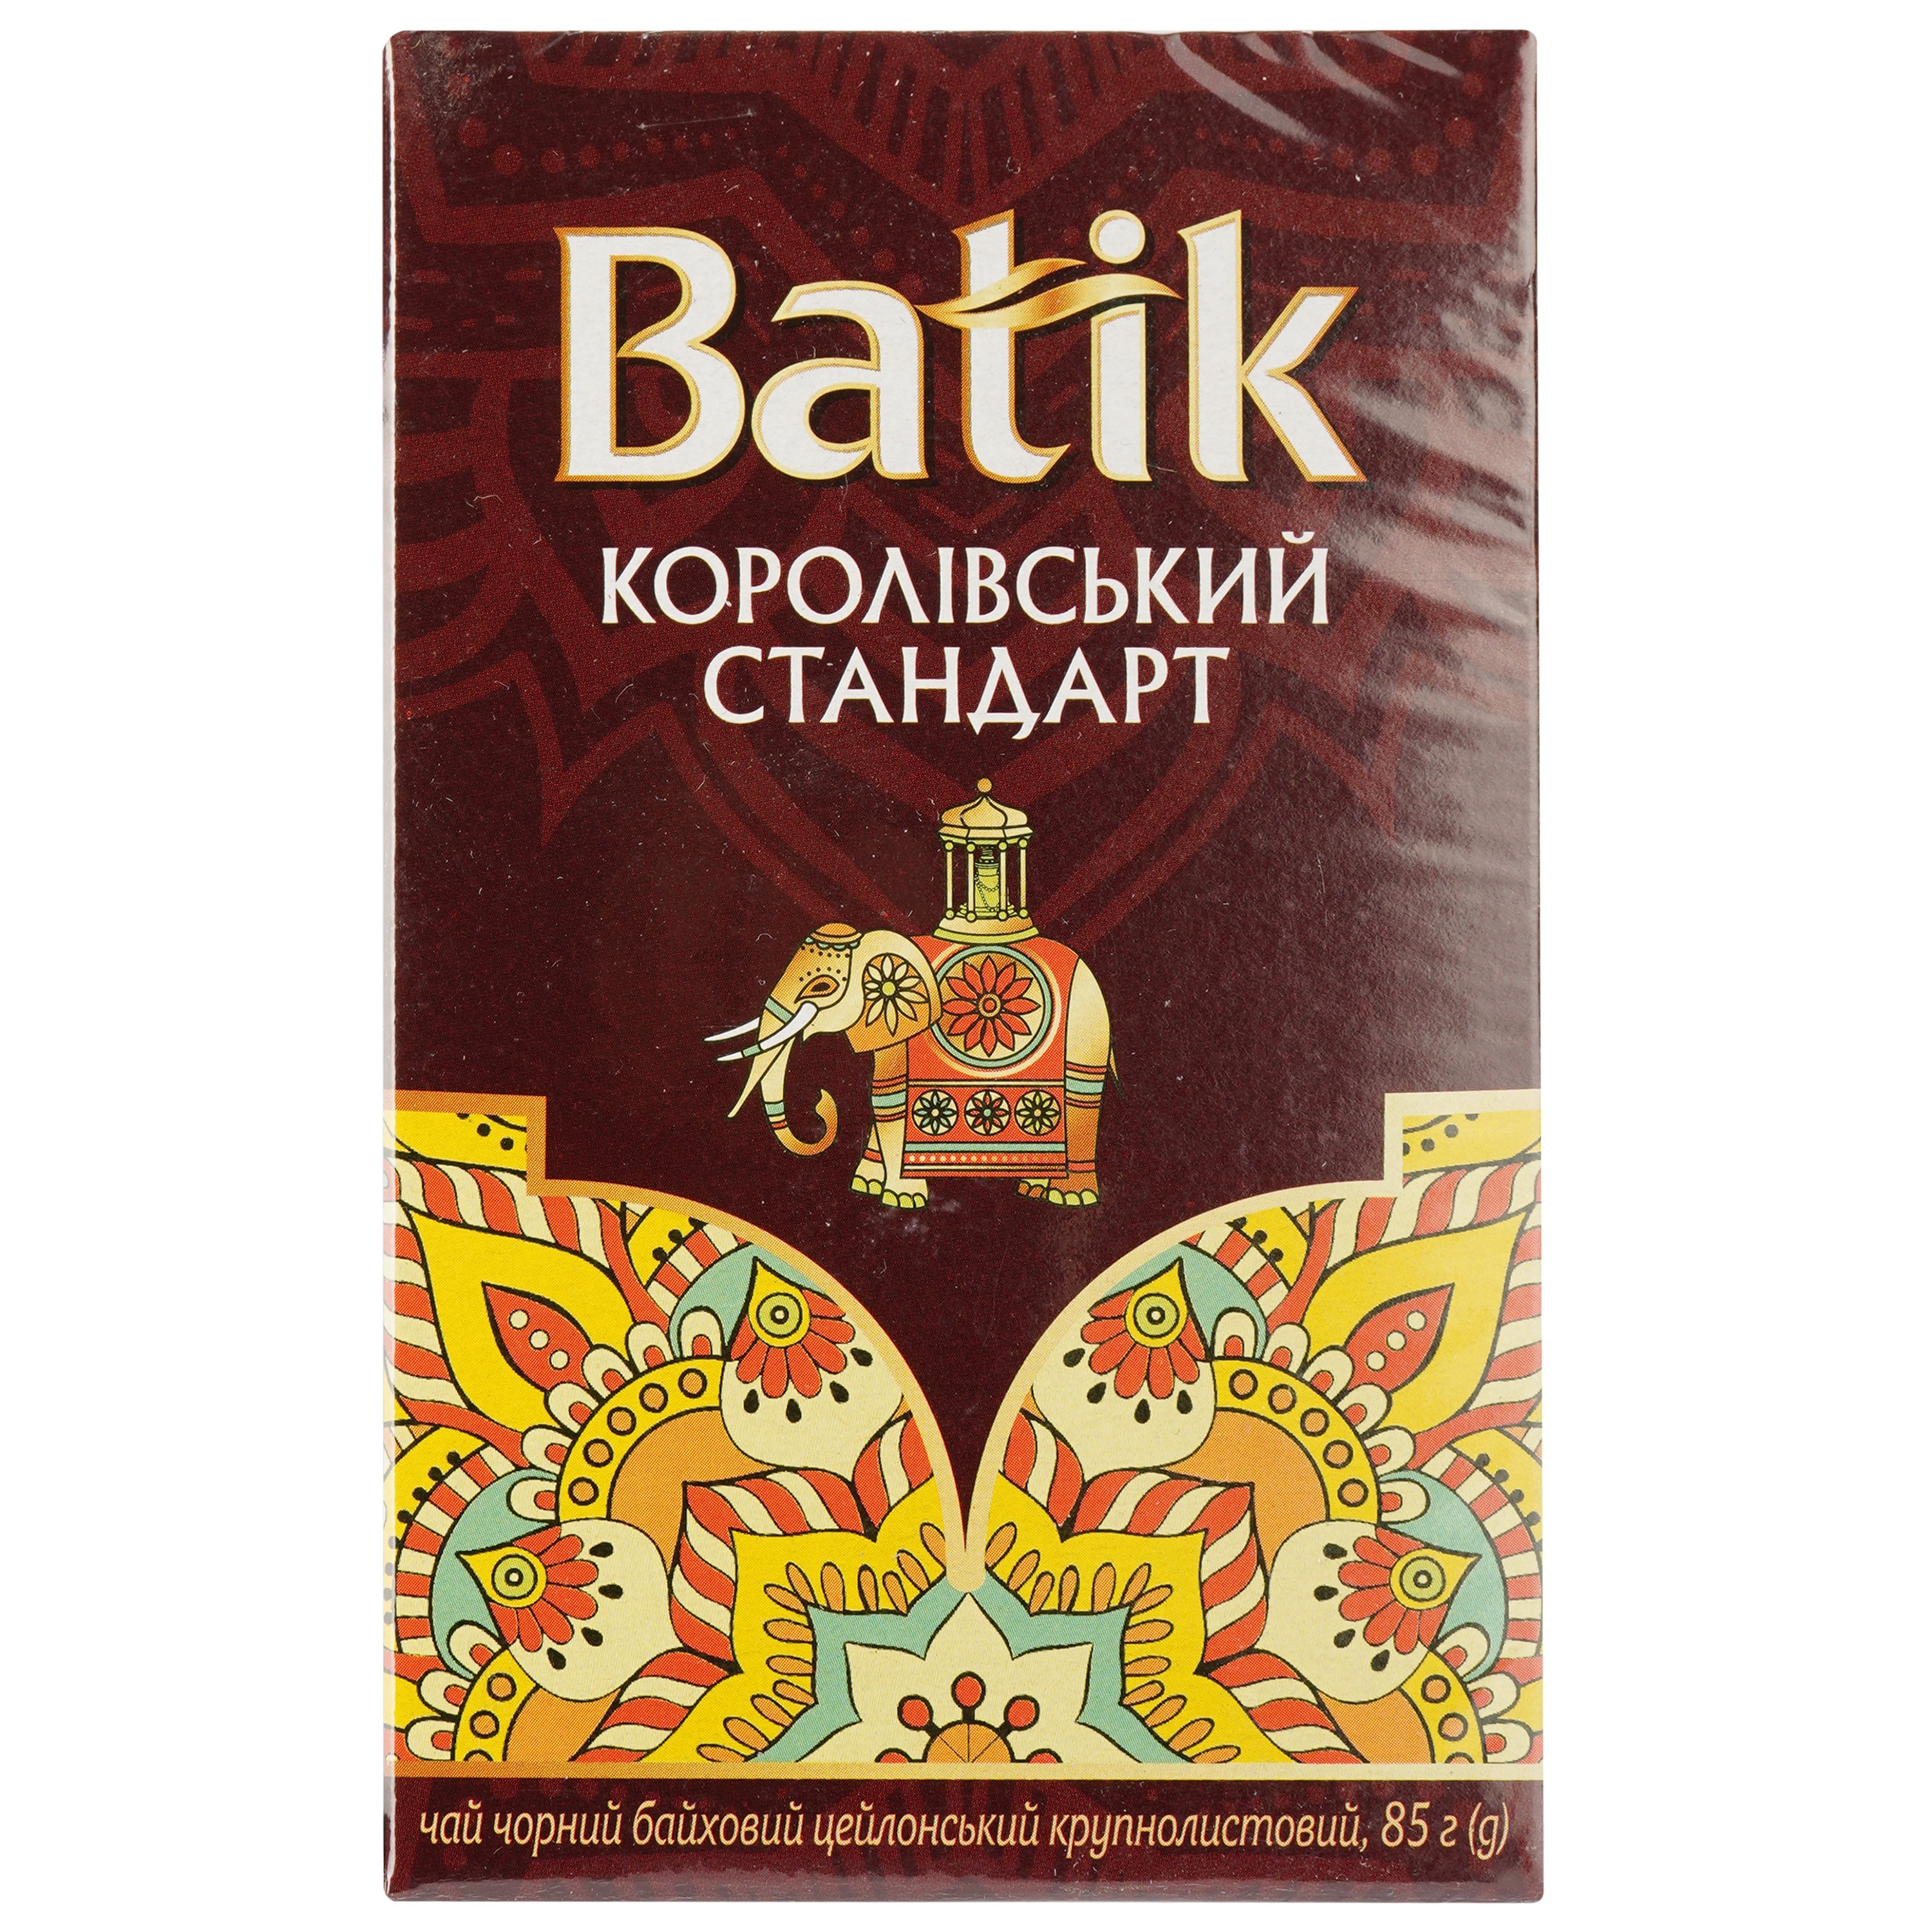 Чай черный Batik Королевский стандарт байховый, цейлонский, крупнолистовой, 85 г - фото 1